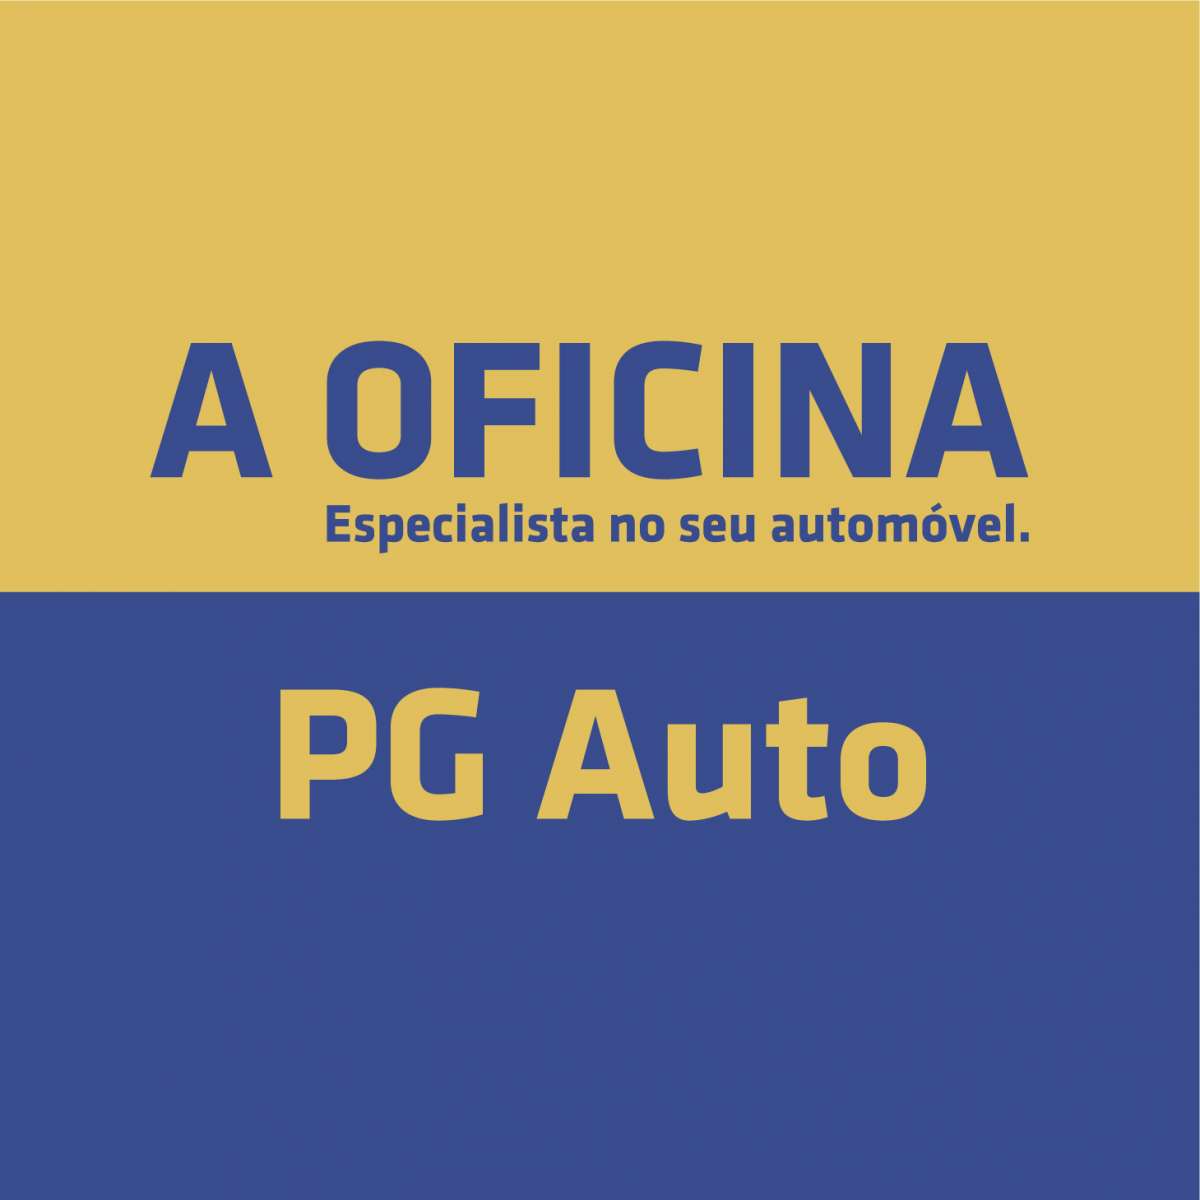 Pedro Gaspar - Fundão - Oficinas de Carros